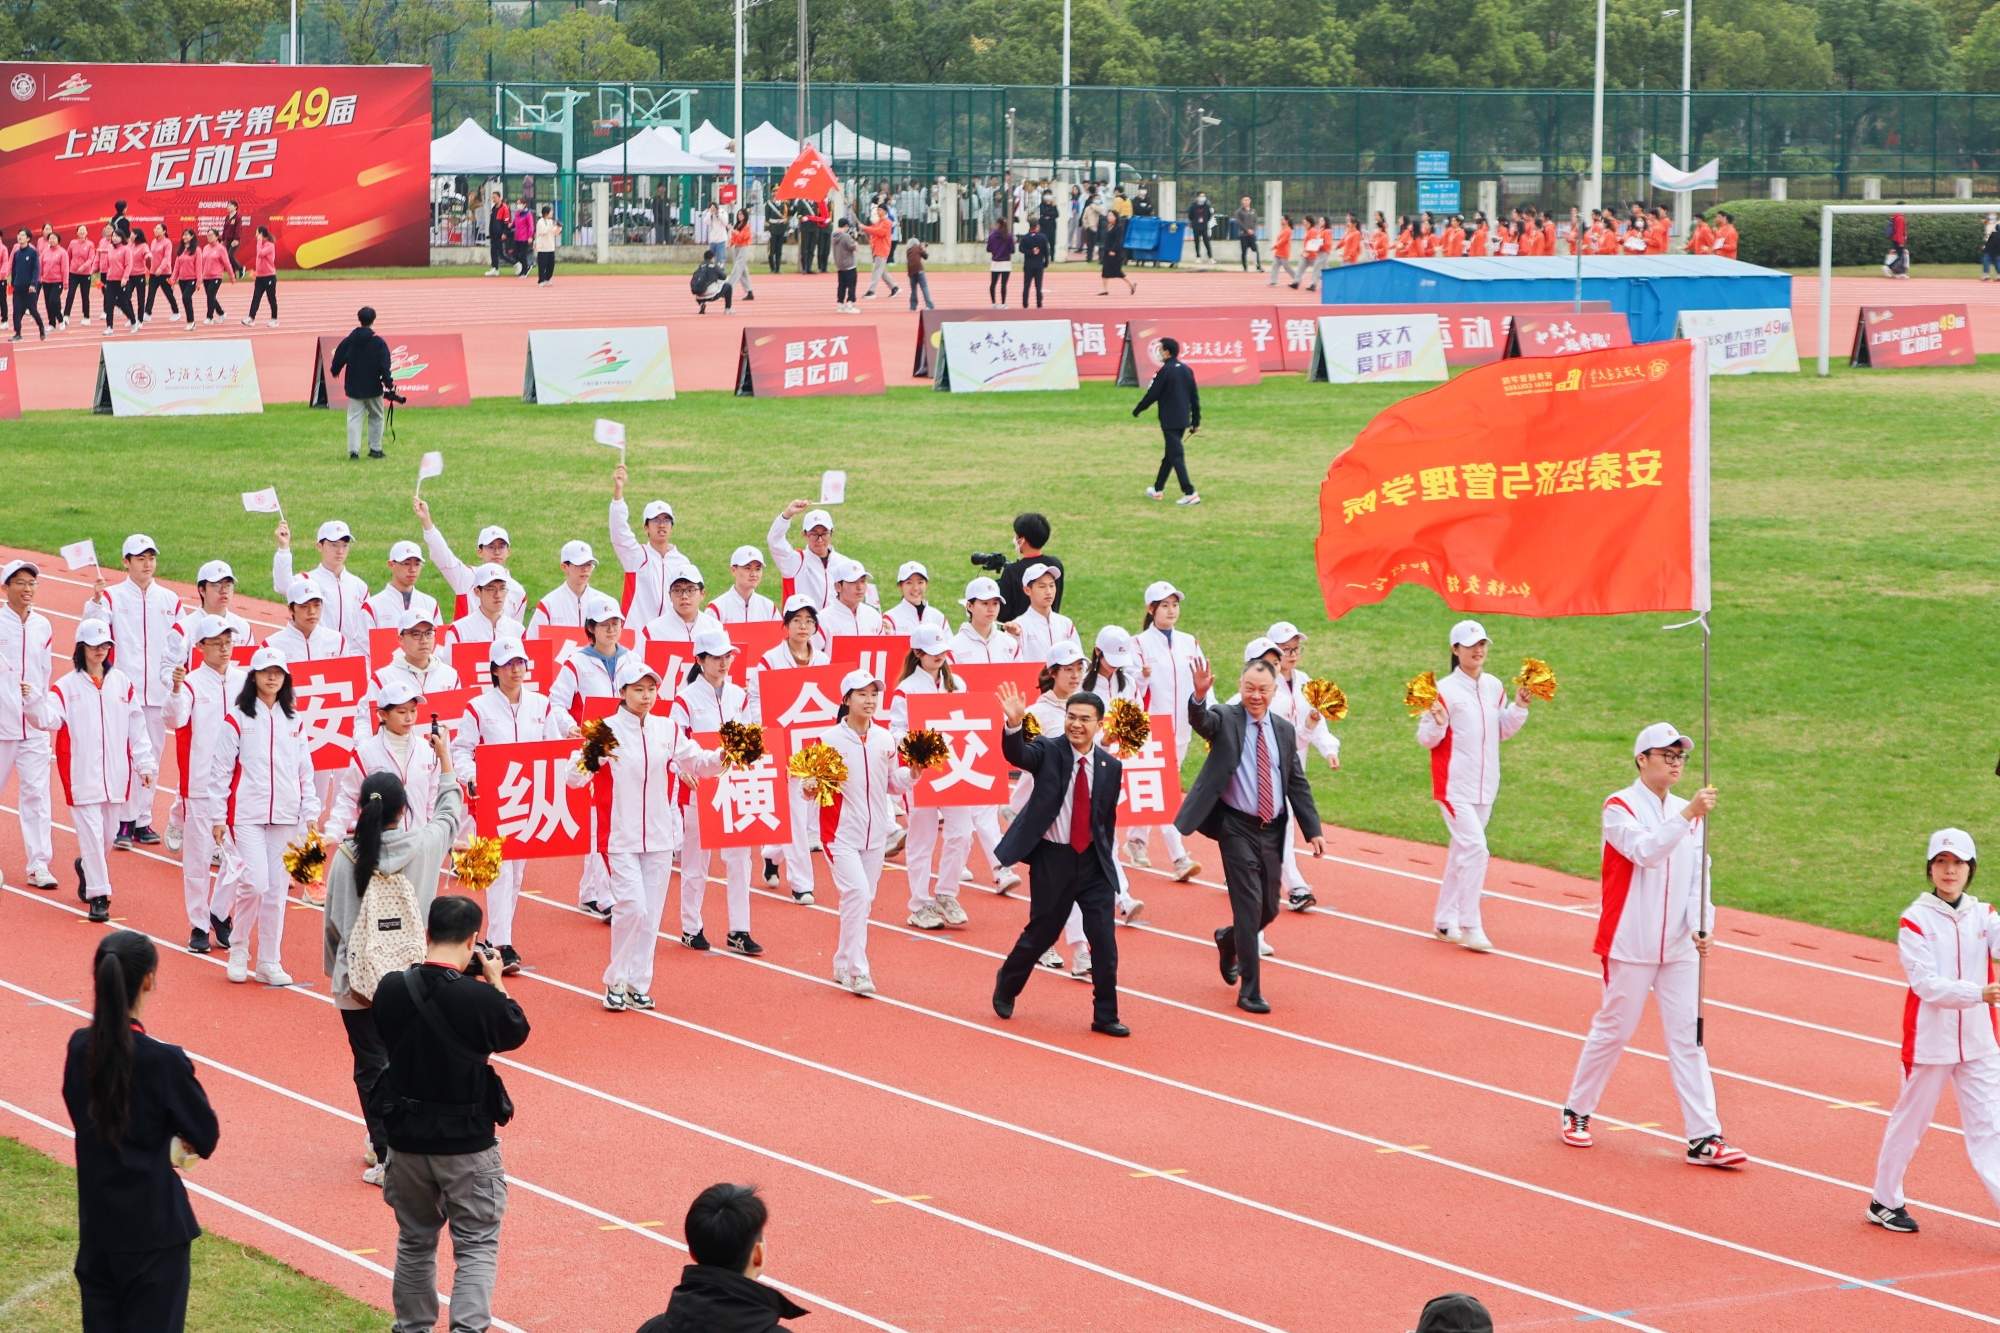 我院教职工在上海交通大学第49届运动会上获得佳绩